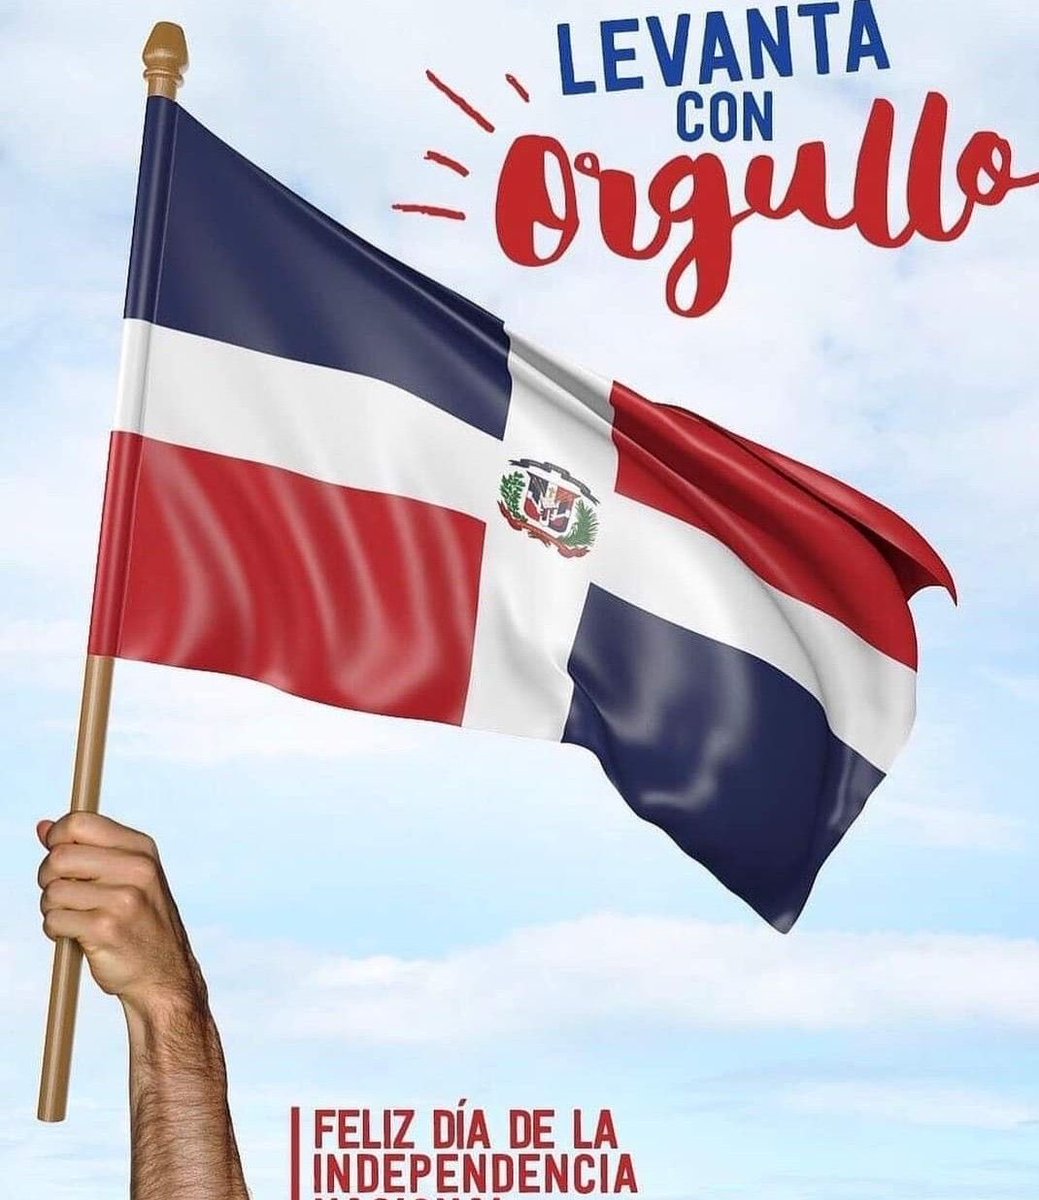 Feliz Día De La Independencia Dominicana! Happy Dominican Independence Day 🇩🇴! #OurNEConexion @TheRealOurNE @conexioncoalit1 @Eman_Conexion @Liz_Conexion